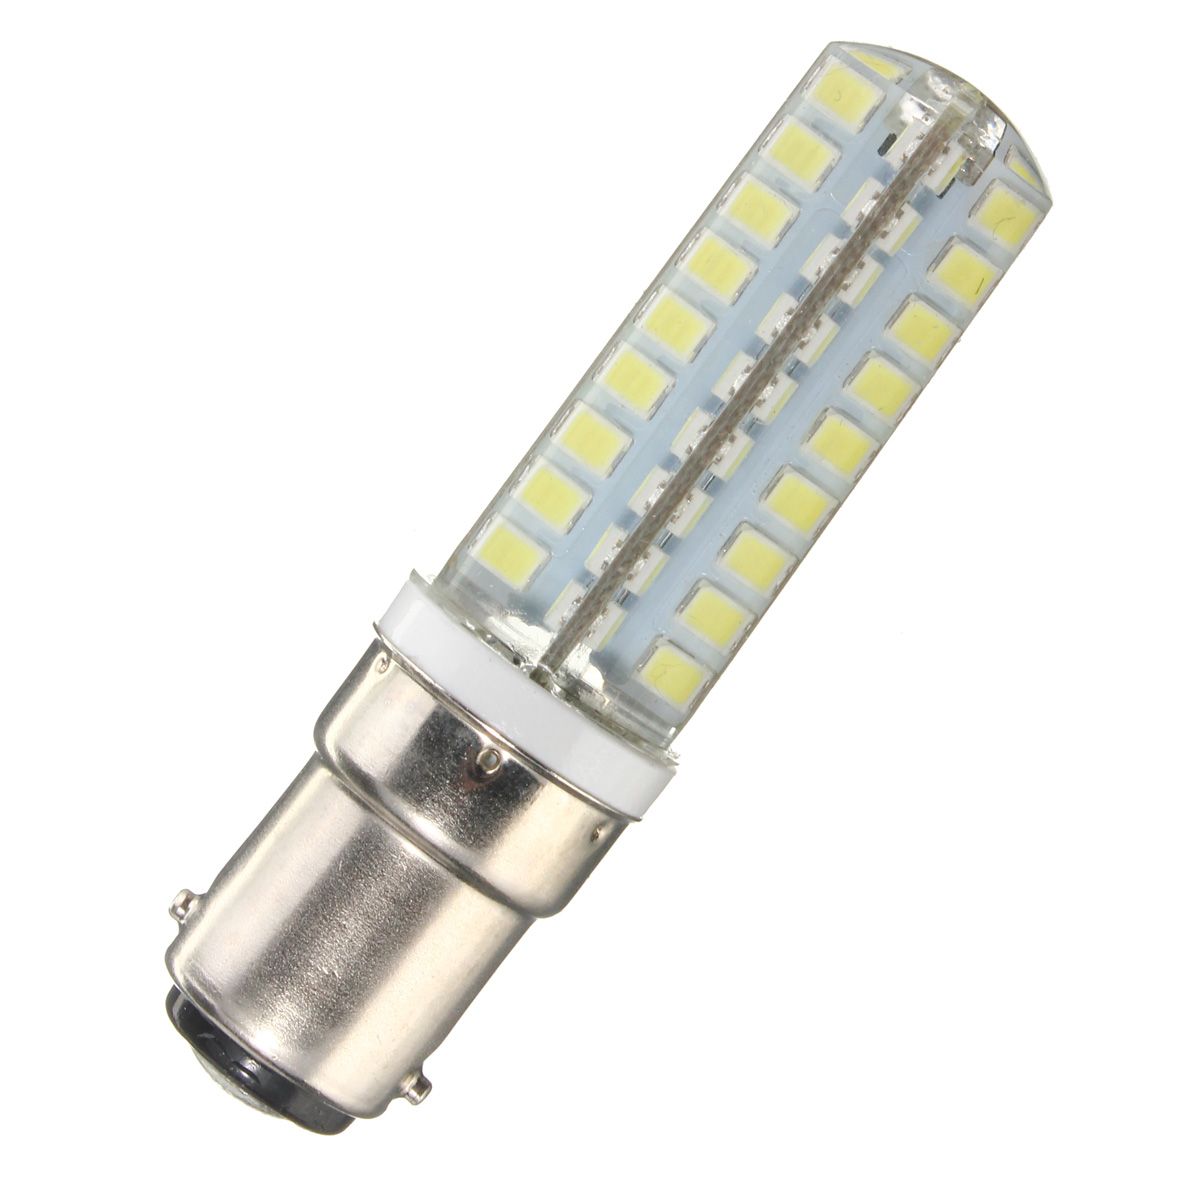 Dimmable-G9-E12-E14-B15-45W-72-SMD-2835-LED-Corn-Bulb-Household-Light-lamp-AC110V-1039655